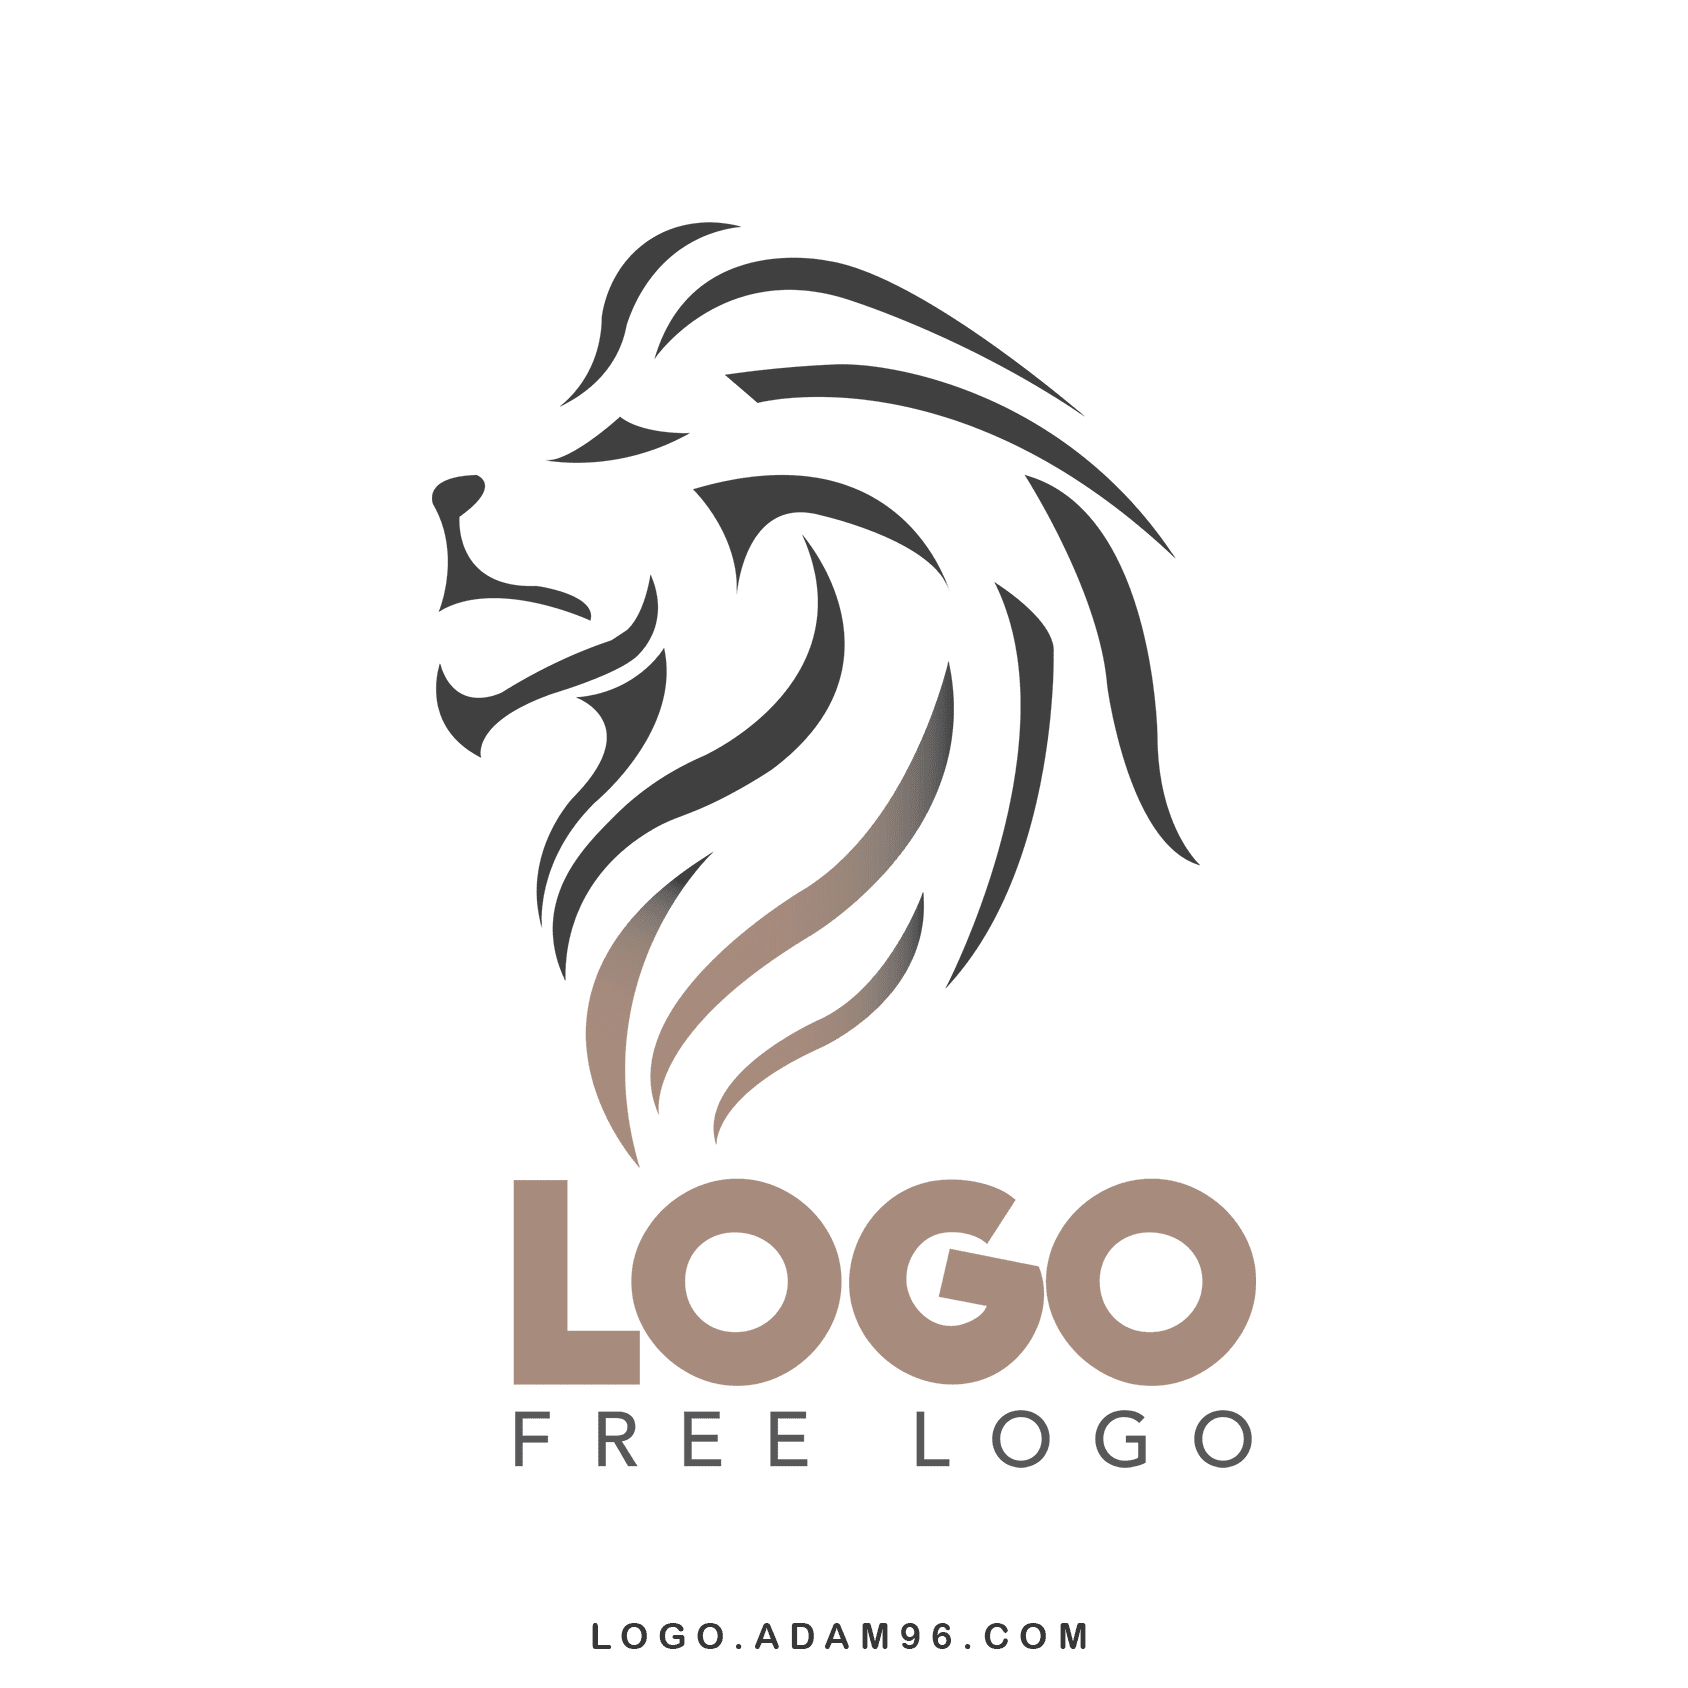 Download Free Logo Lion Transparent Vectors PDF - AI - SVG - PNG